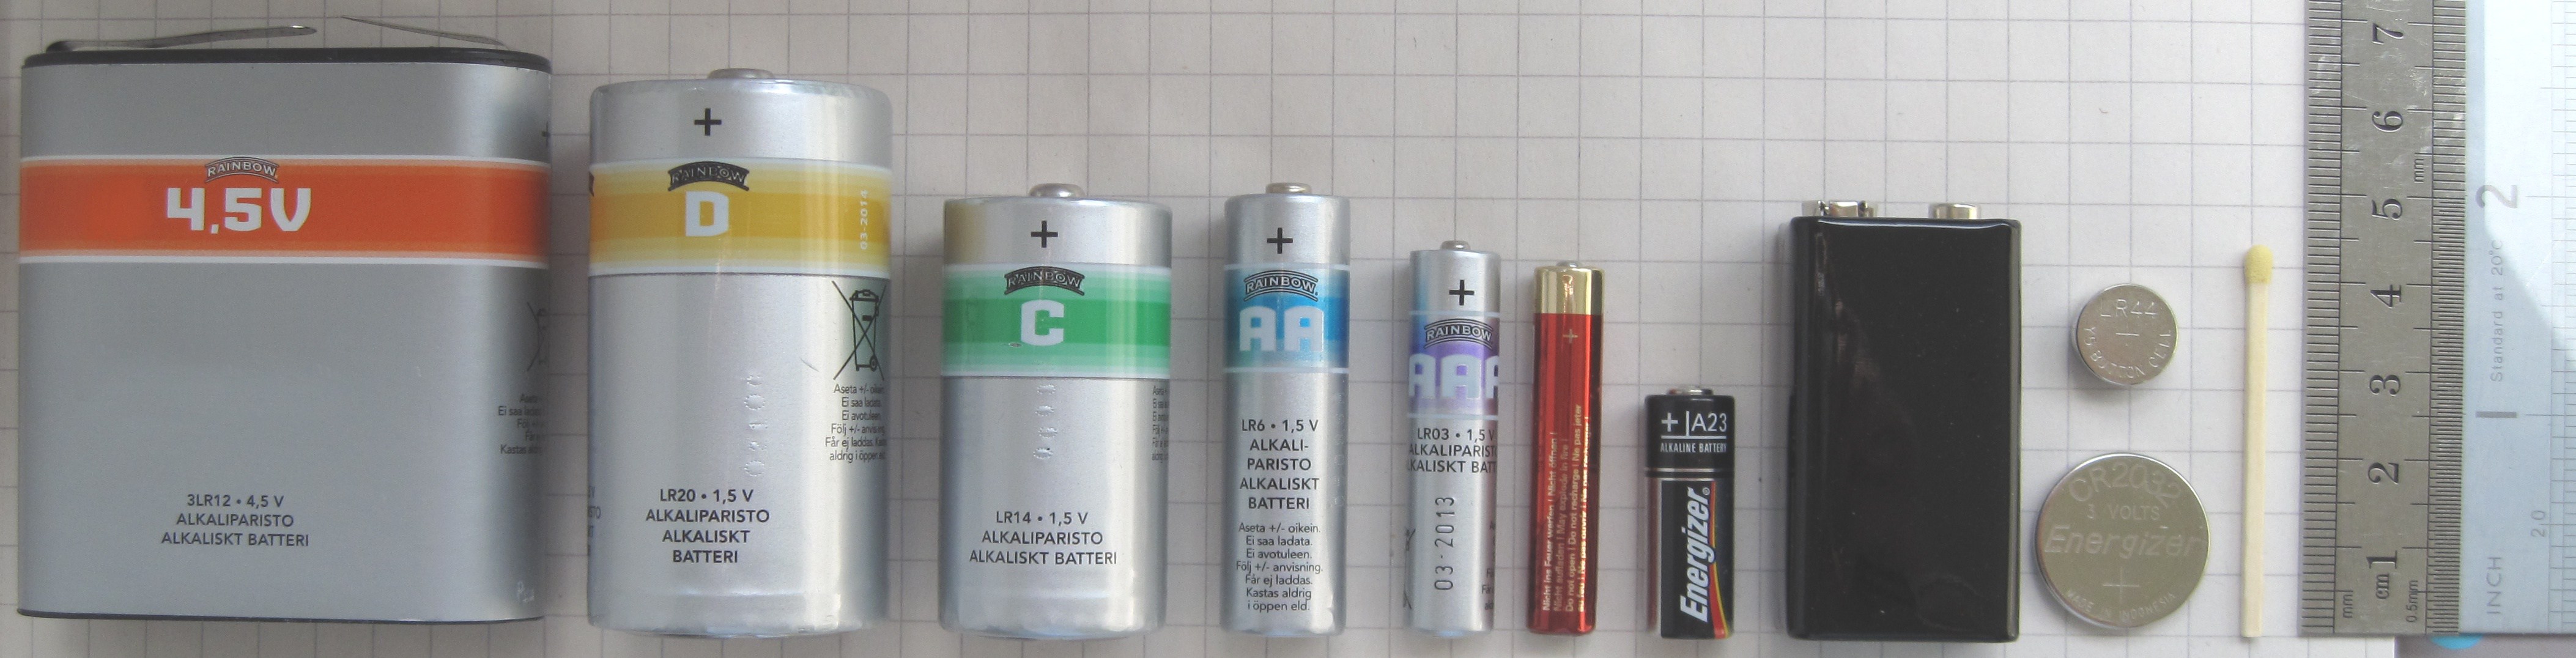 batteries_comparison_45_d_c_aa_aaa_aaaa_a23_9v_cr2032_lr44_matchstick-1